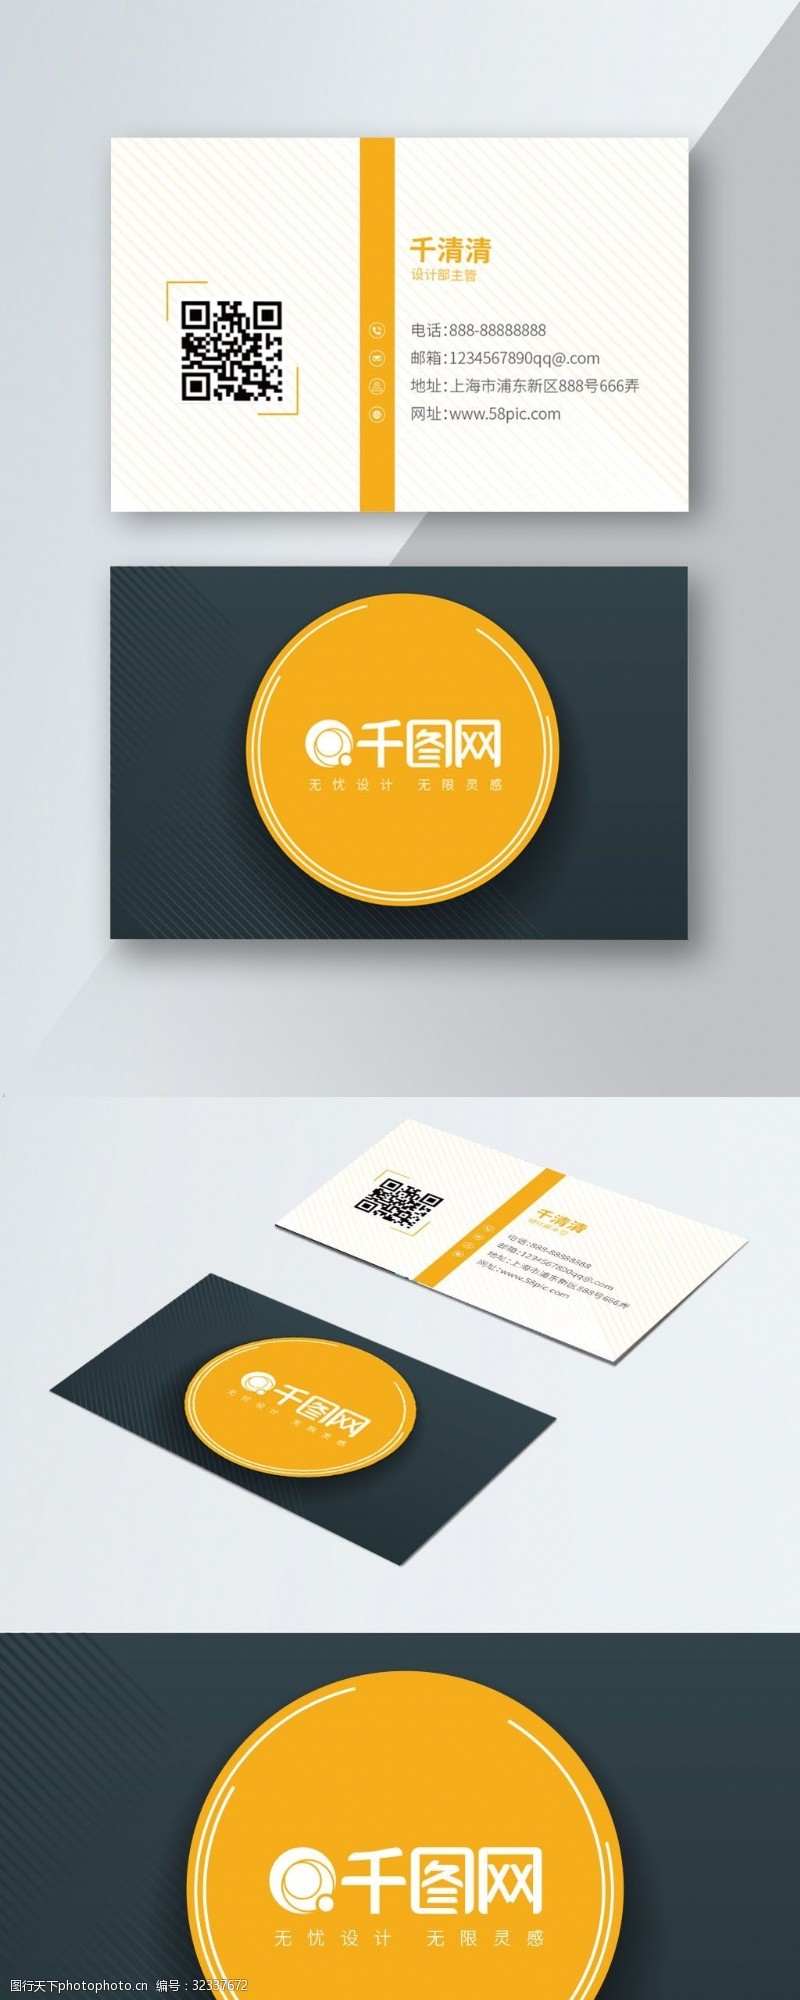 名片模板免费下载黄色橙色简洁时尚商务名片